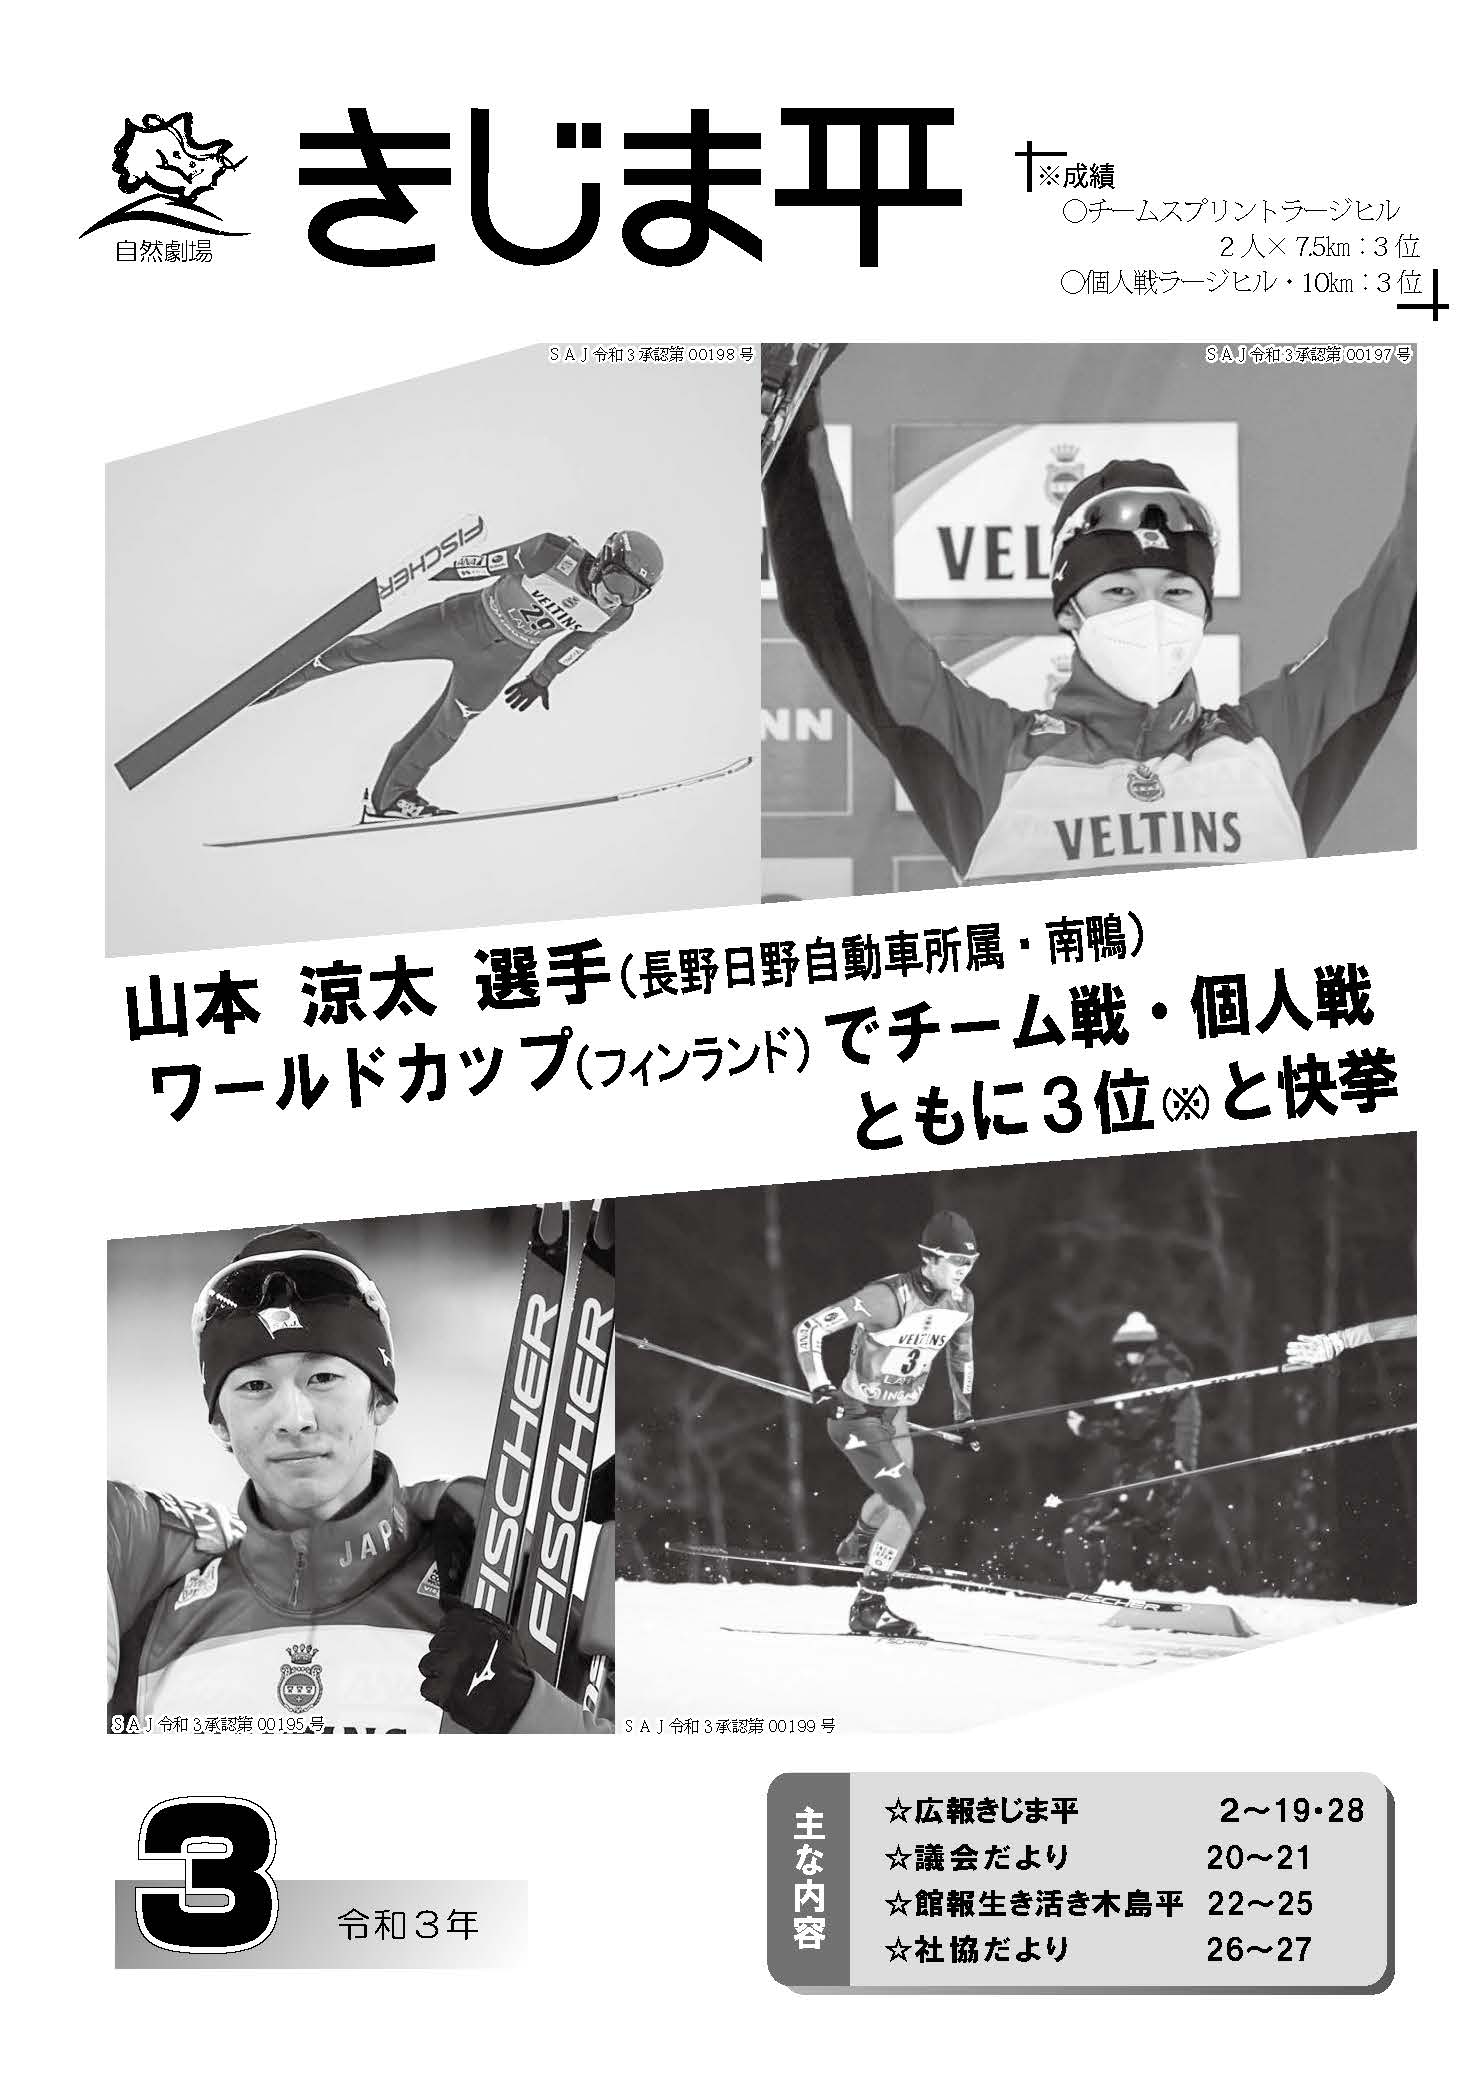 スキー山本涼太選手の写真